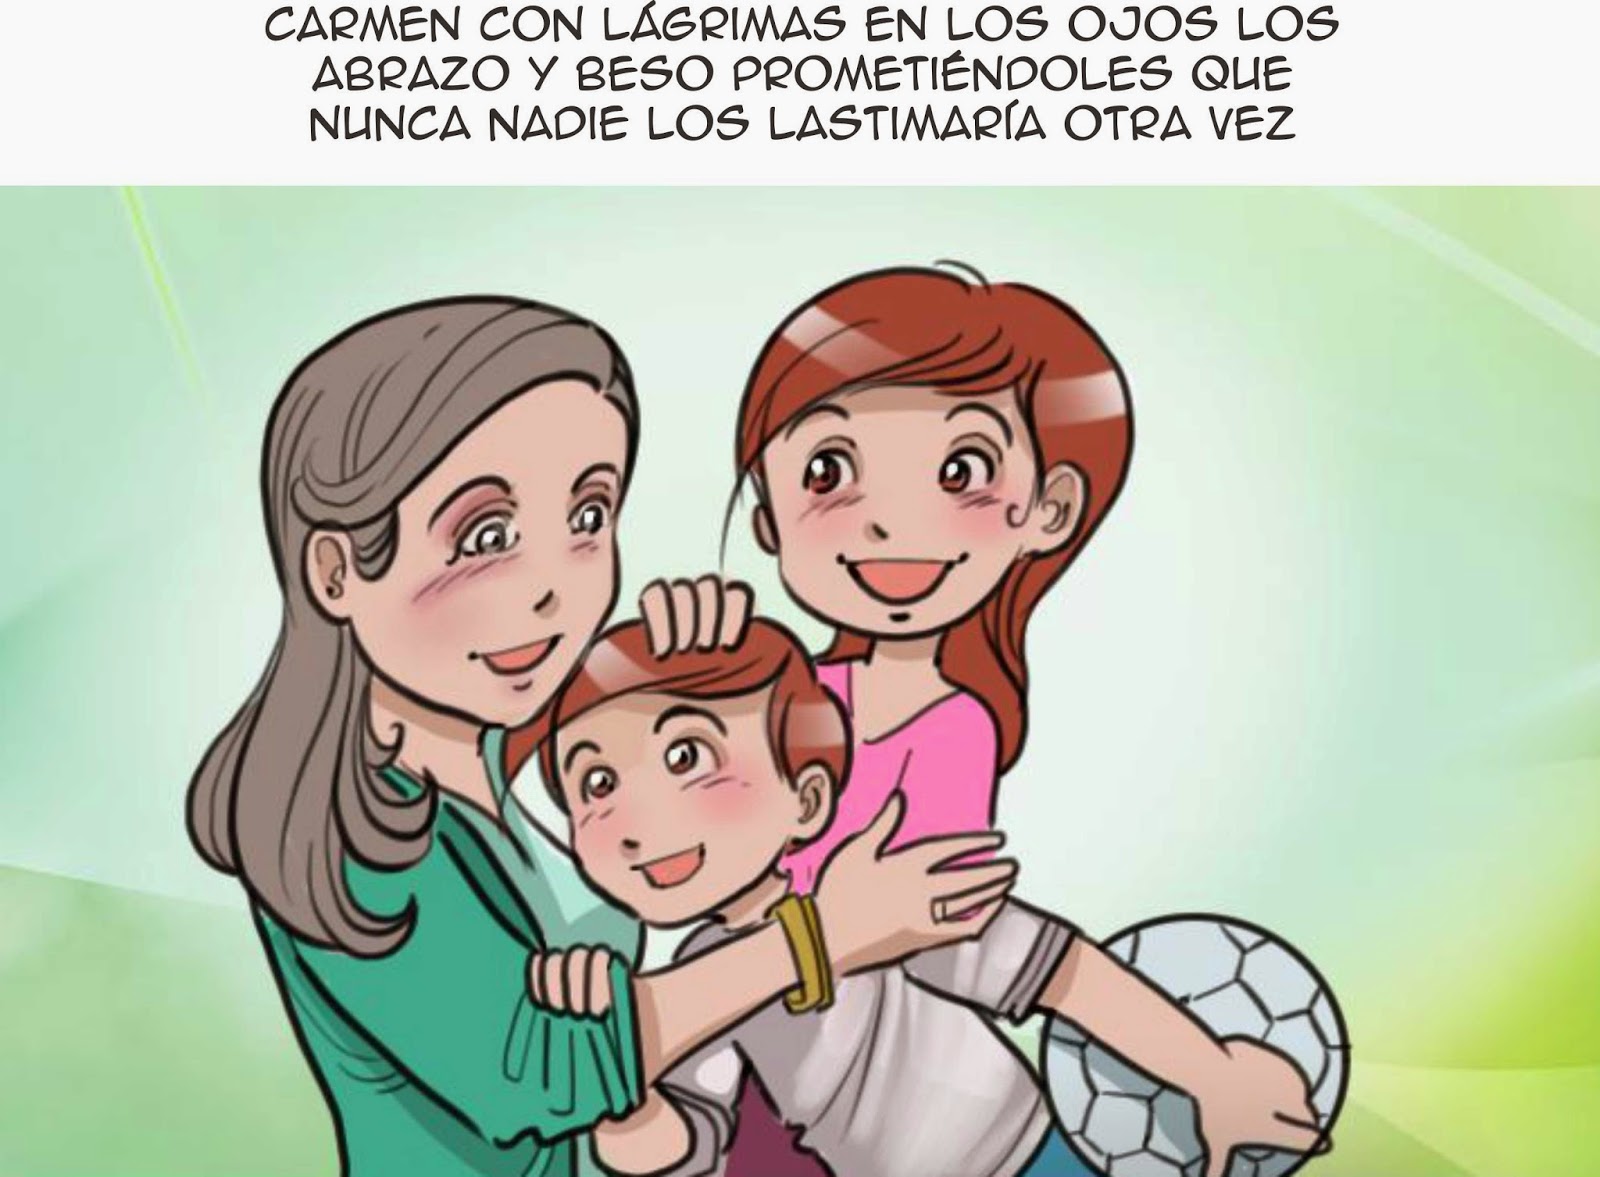 Conformación Educativa Social Comic Web Abuso Infantil Ana El Secreto